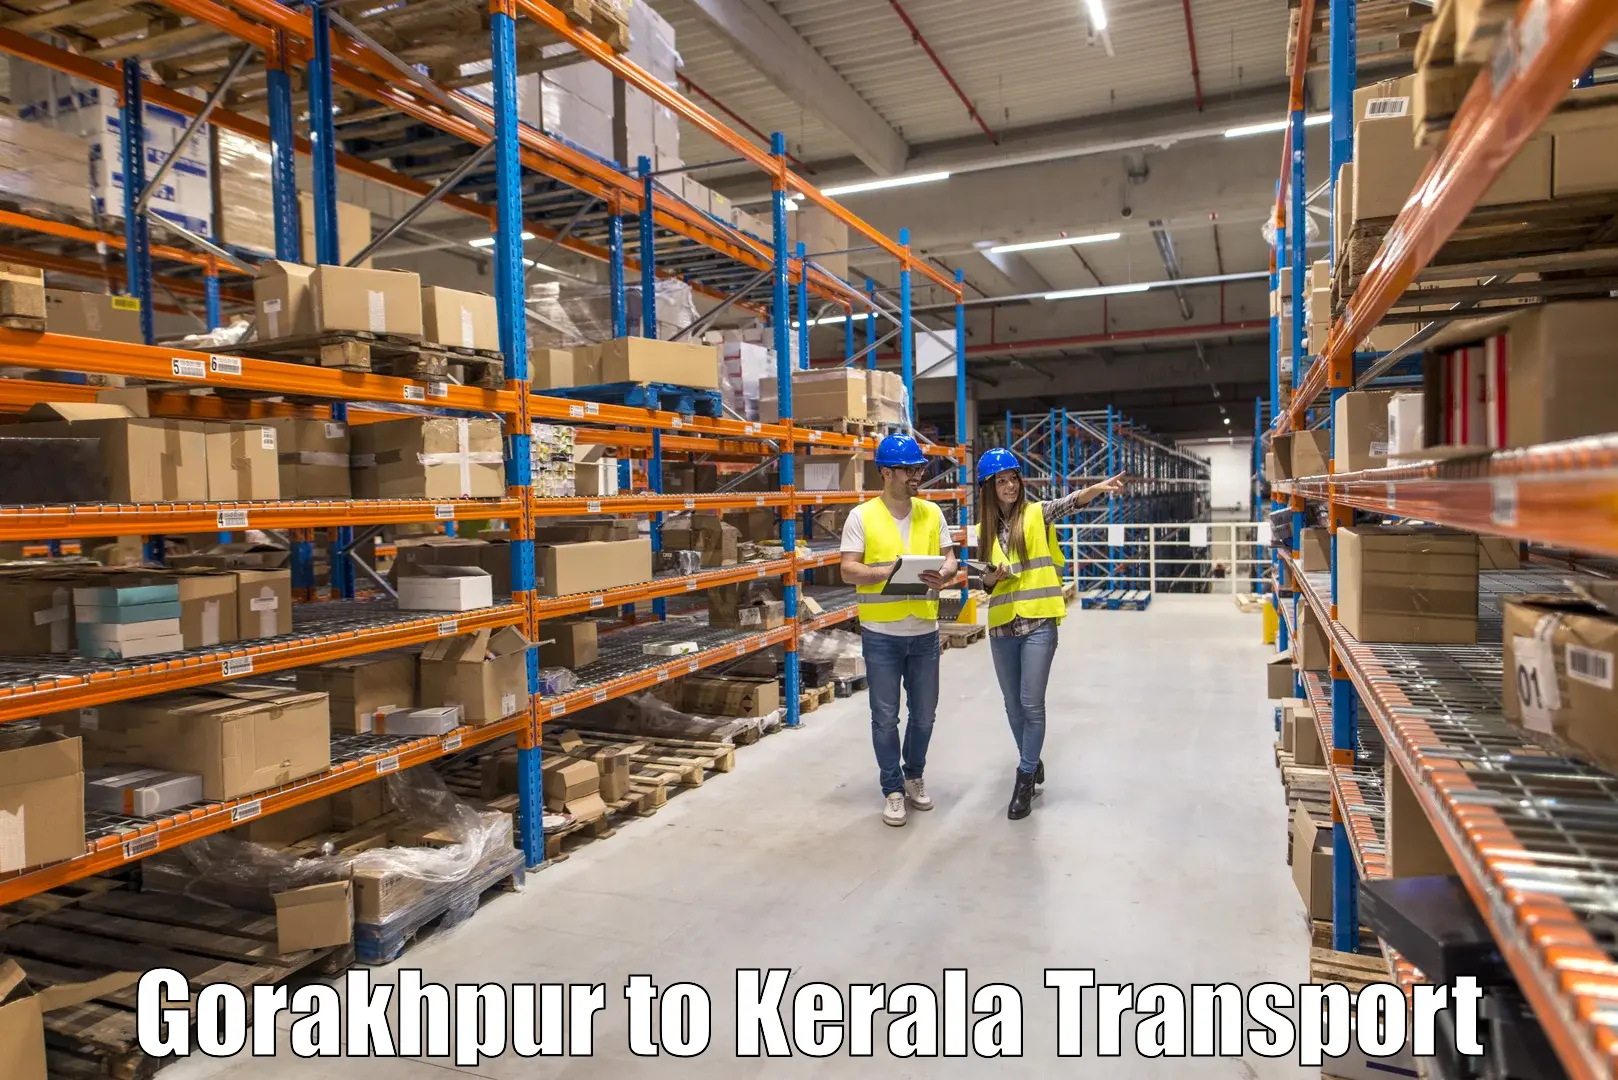 Interstate transport services Gorakhpur to Thiruvananthapuram